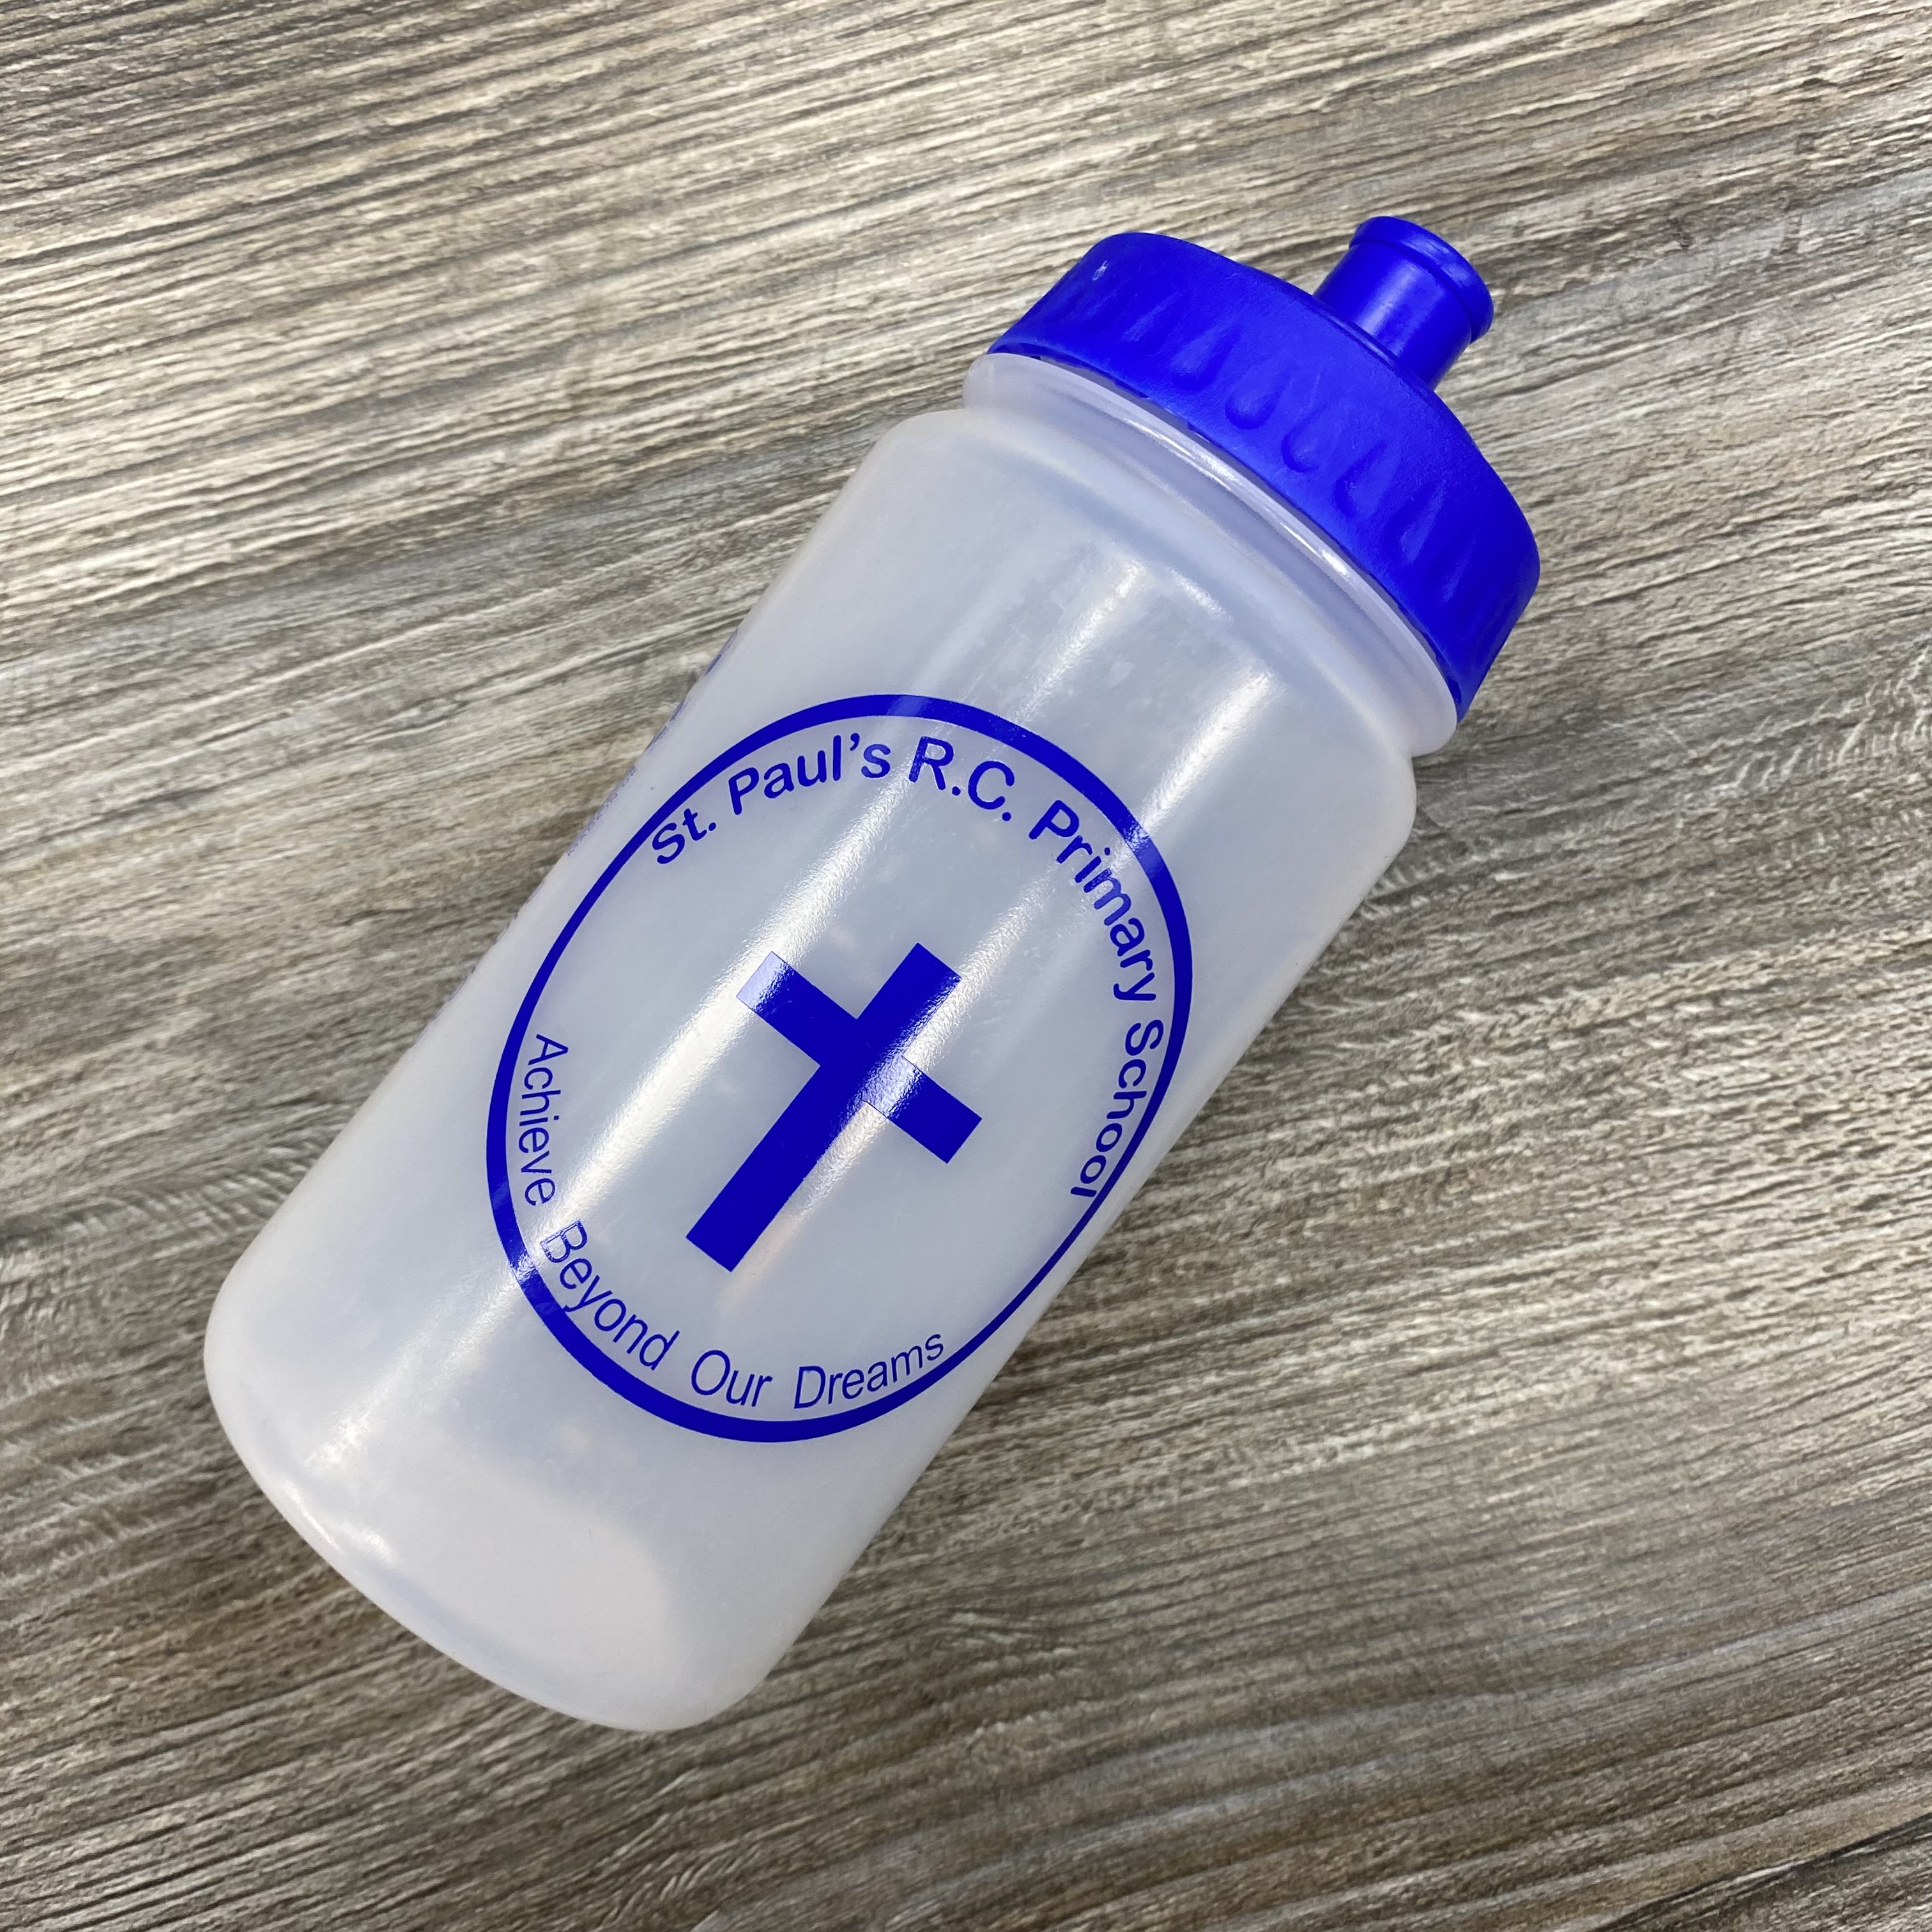 St Paul's Feniscowles Water Bottle